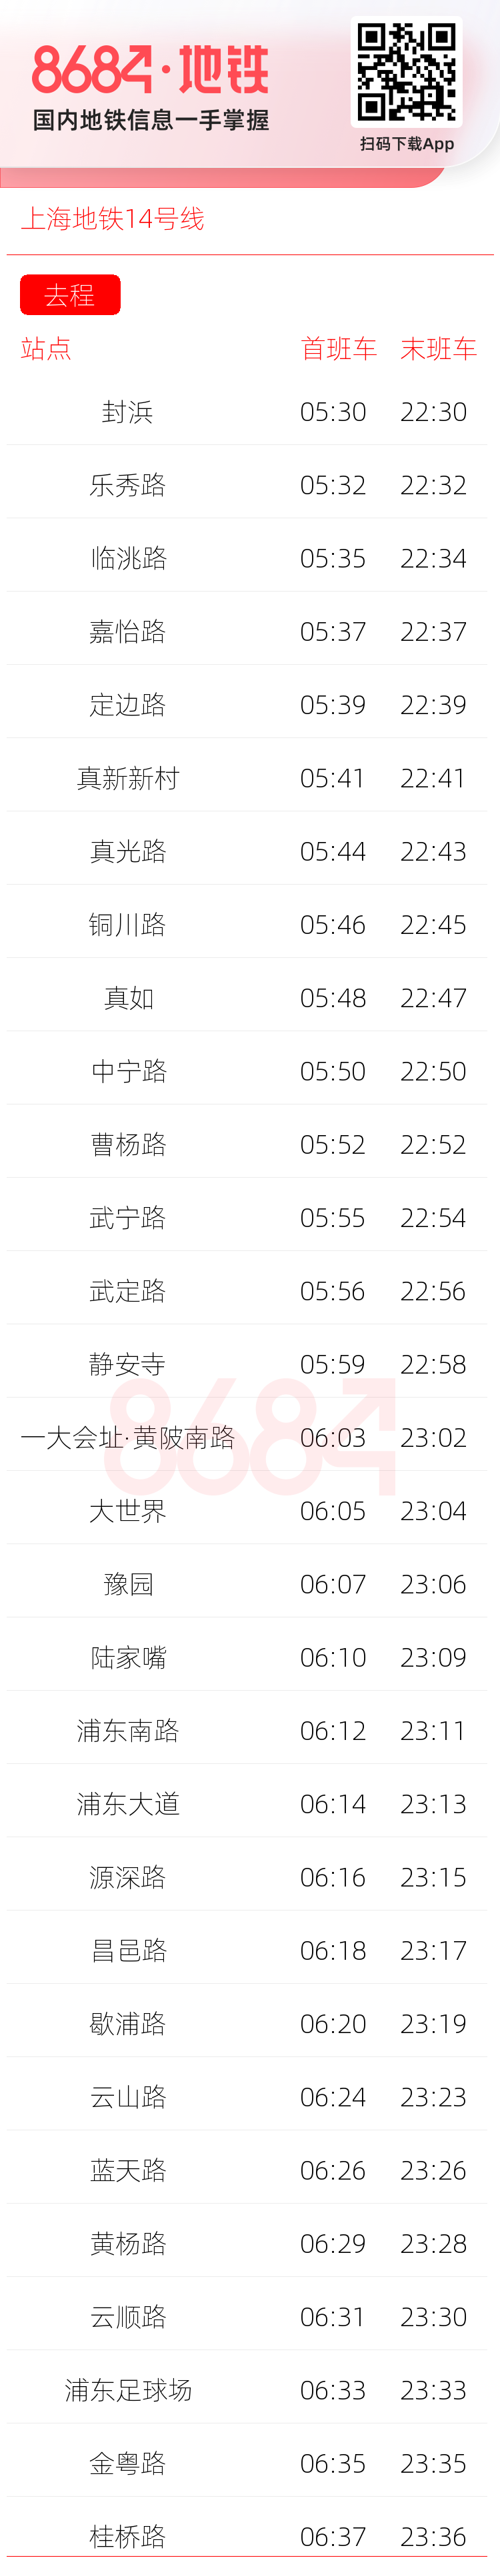 上海地铁14号线运营时间表